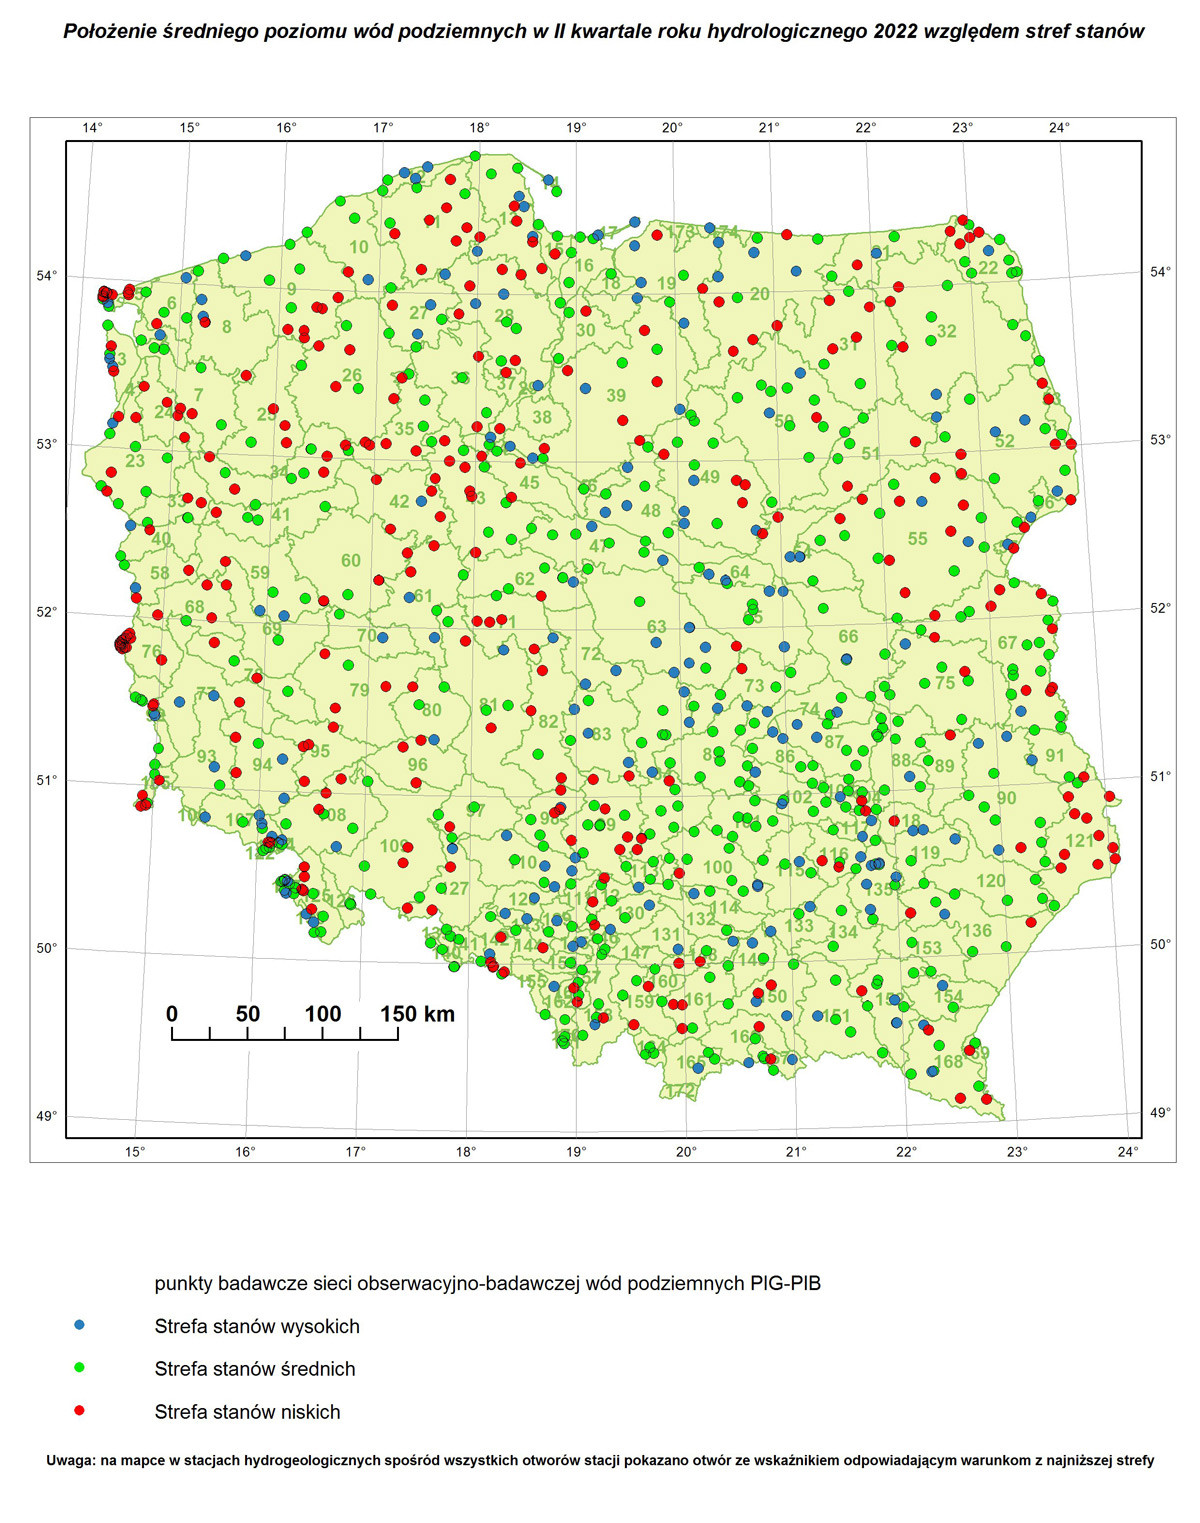 Poziom wód podziemnych w II kwartale roku hydrologicznego 2022 w punktach badawczych sieci SOBWP. Mapa Polski z lokalizacją punktów z zaznaczonymi strefami stanów wód podziemnych